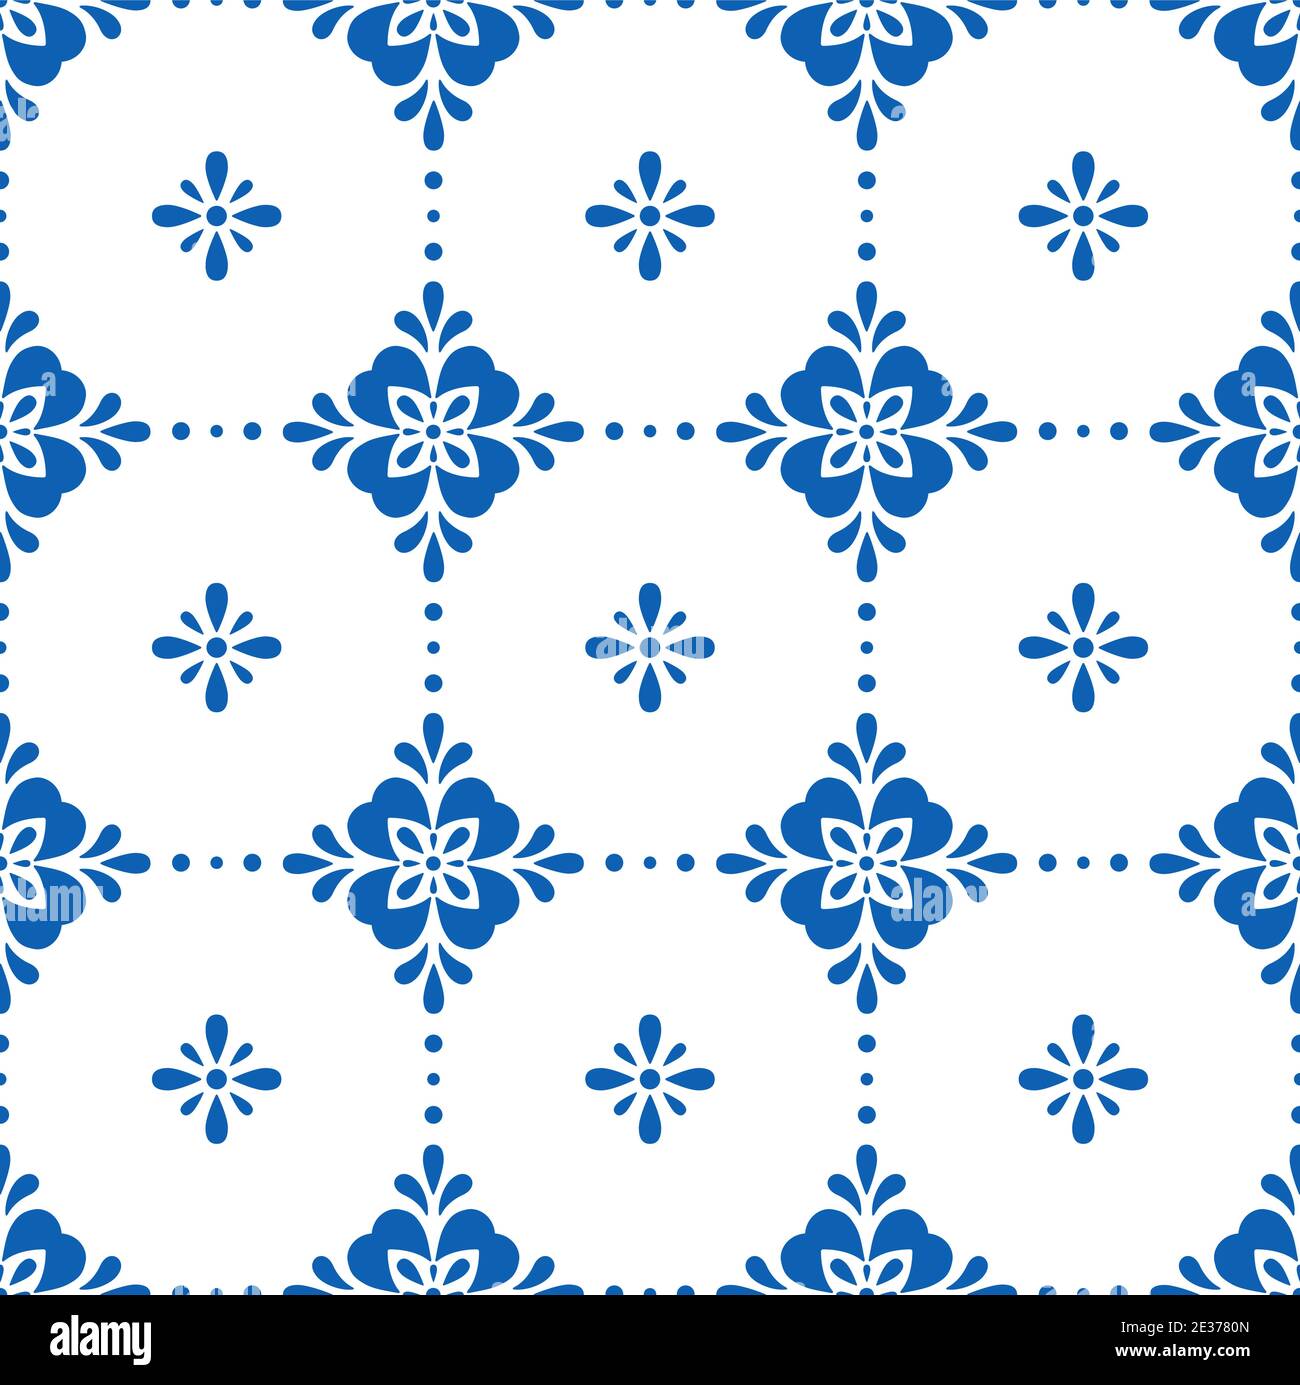 Weiße und blaue Keramikfliesen nahtloses Muster. Einfache geometrische florale Ornament. Vektorgrafik. Stock Vektor